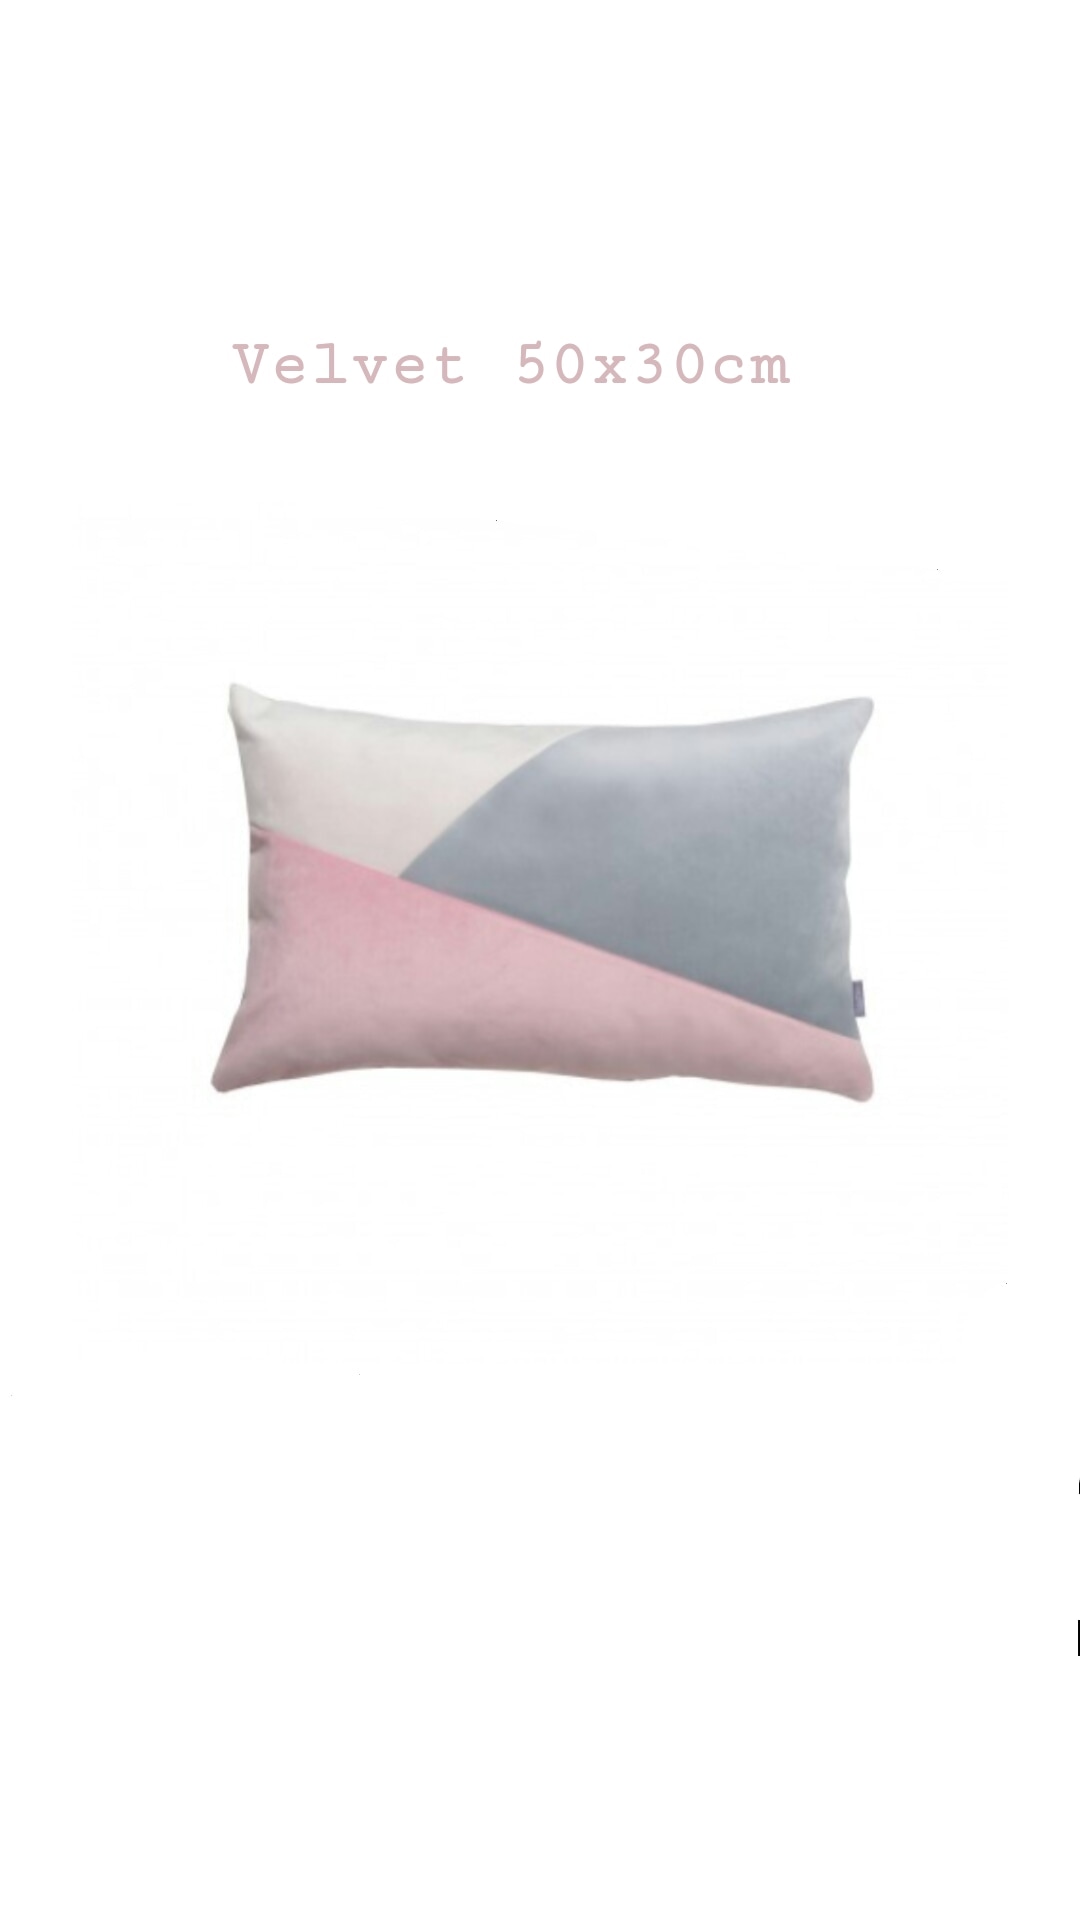 Rectangular pillow